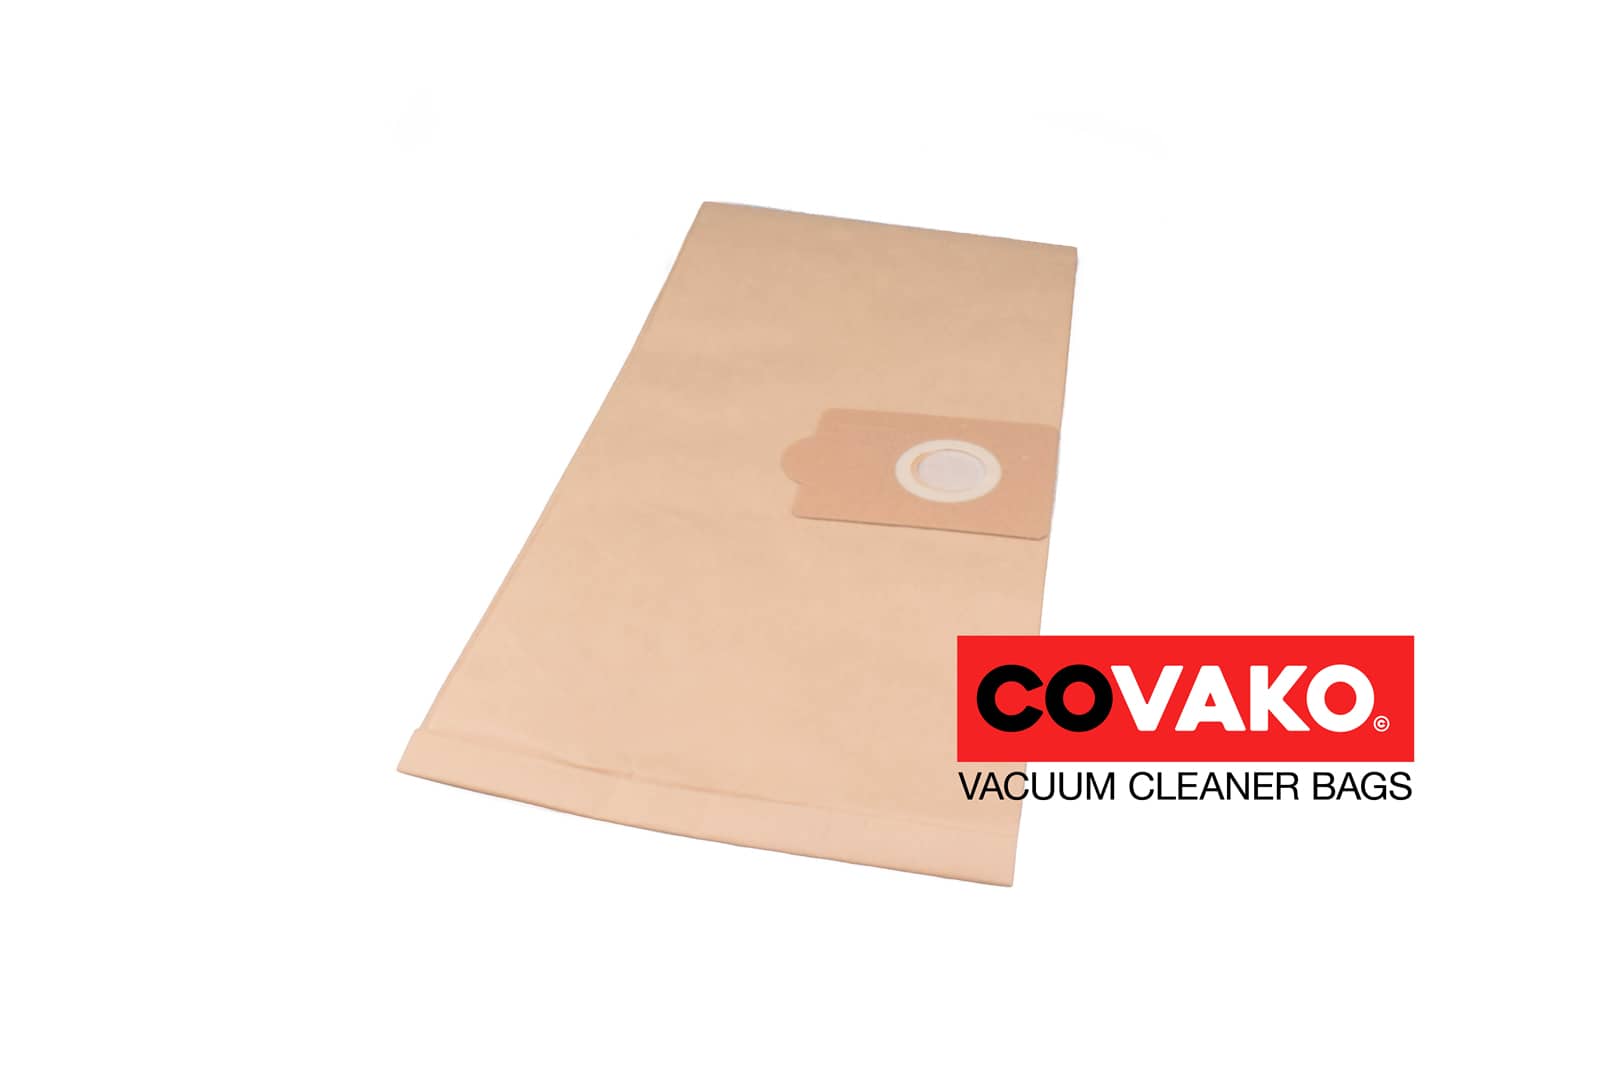 Comac Silent 25 S plus / Paper - Comac vacuum cleaner bags